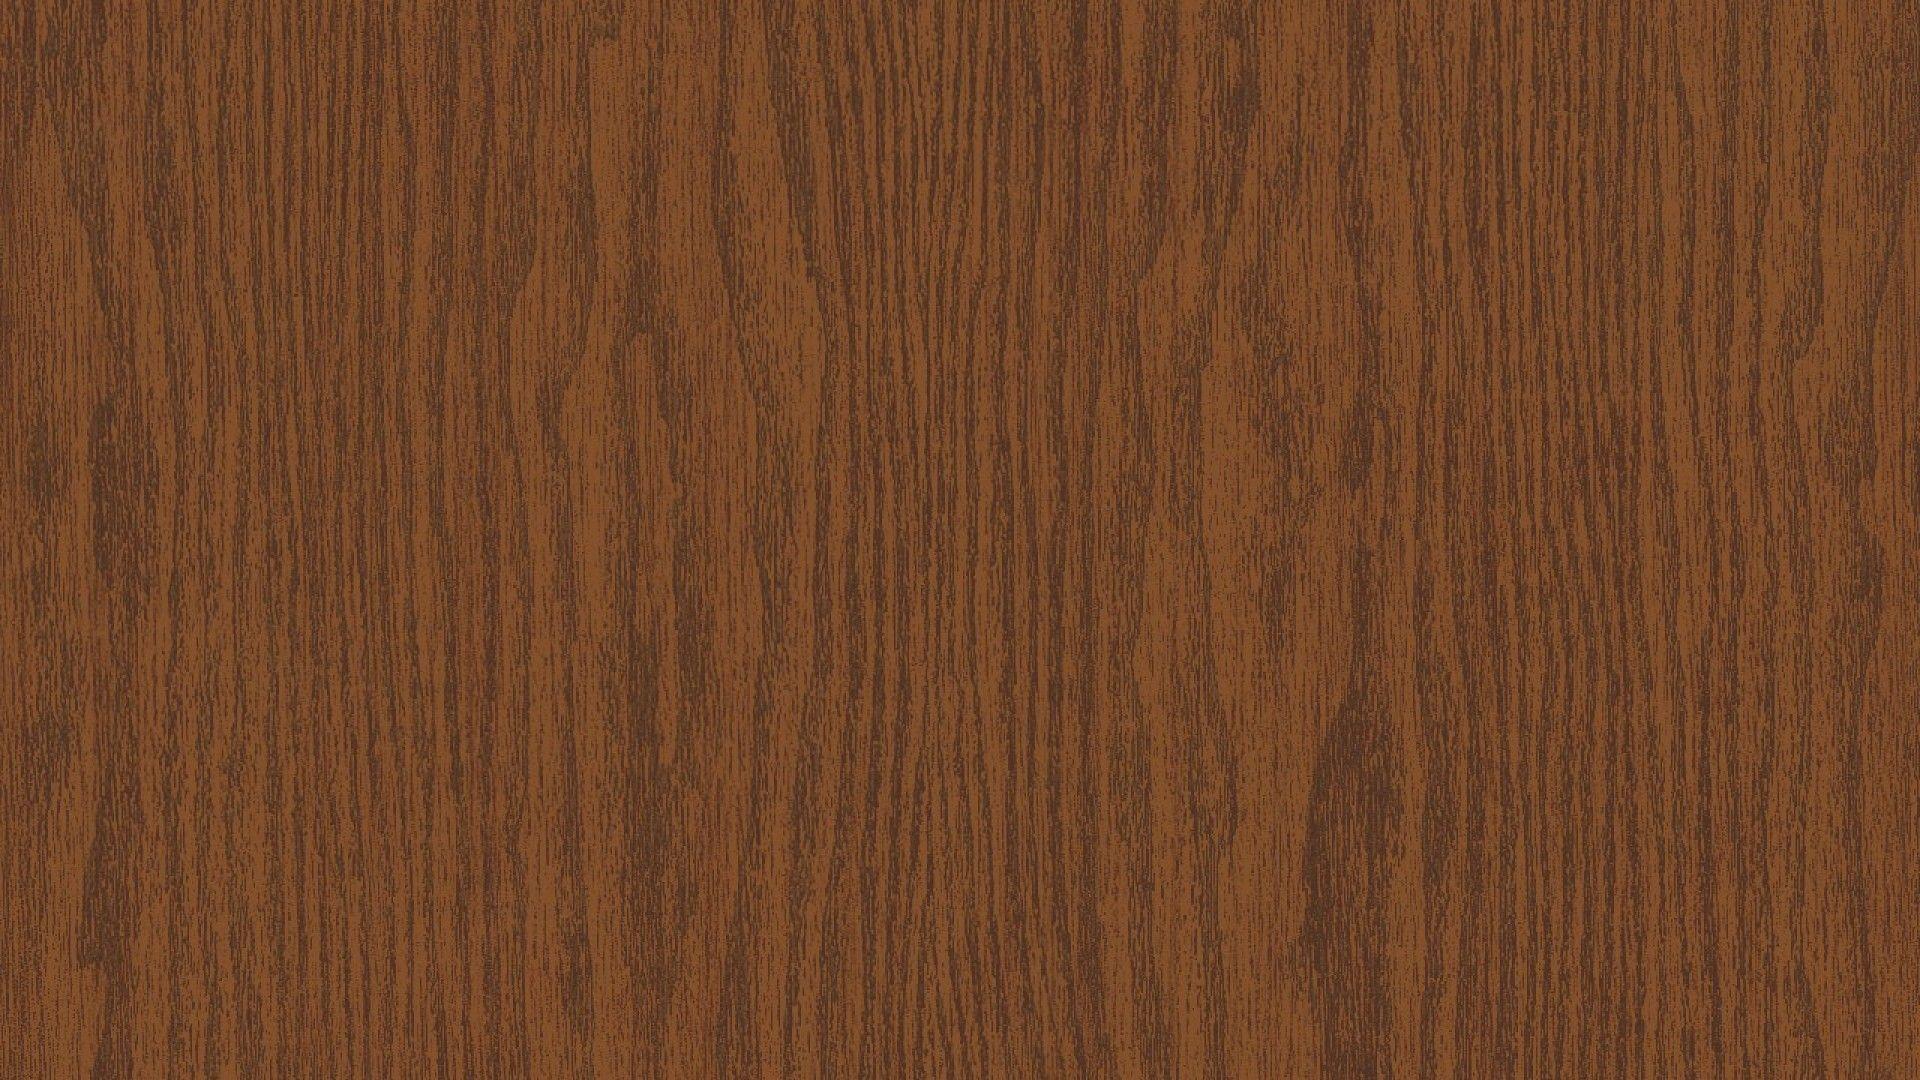 Wood Solid Oak 1920x1080 64695